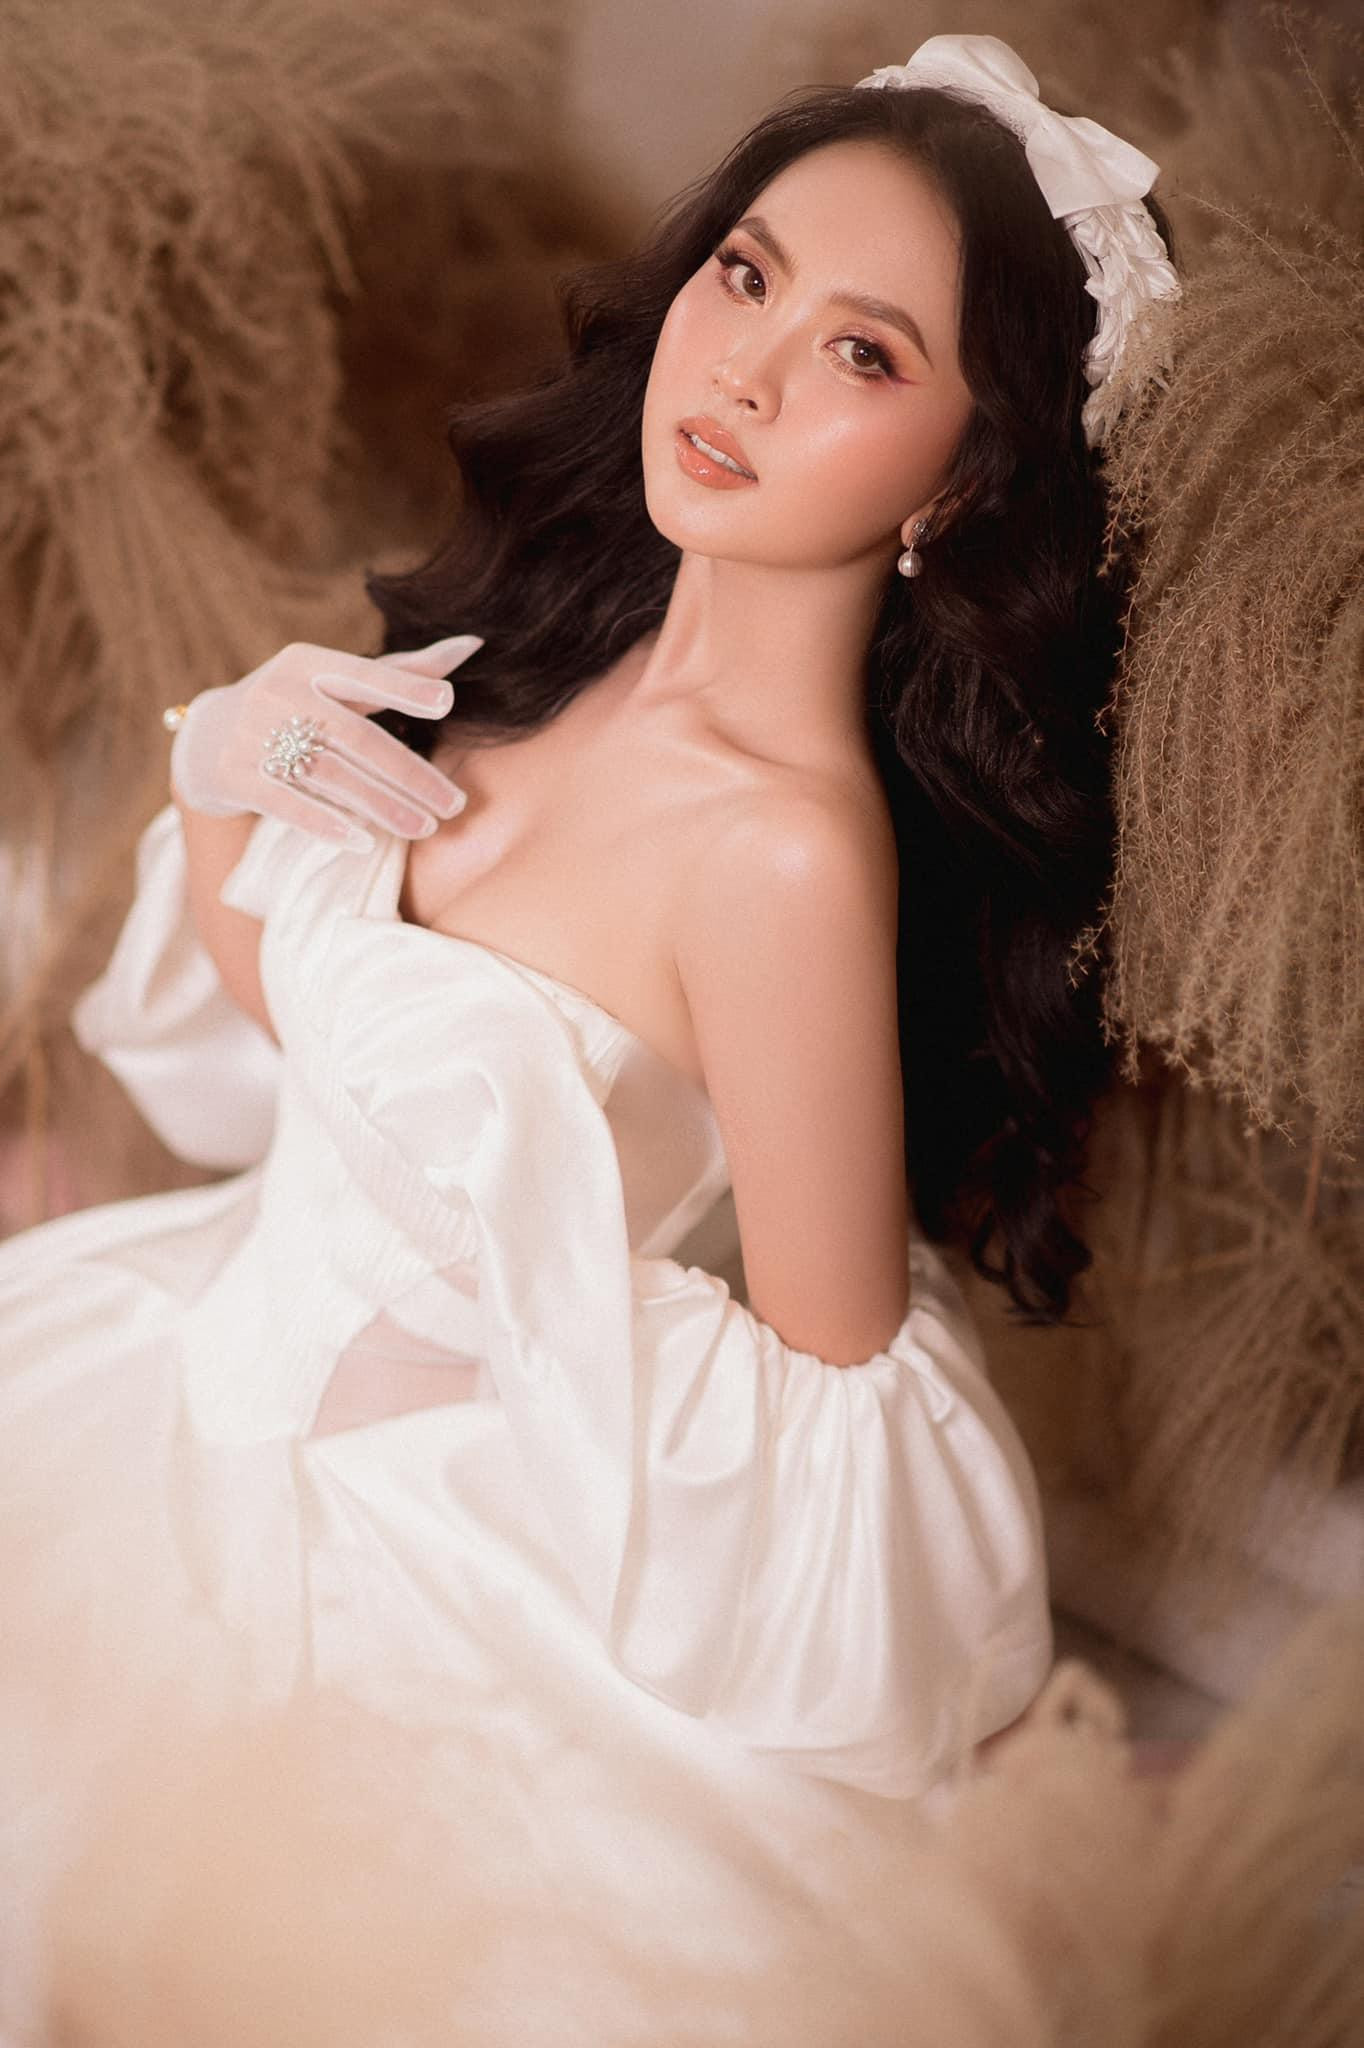 Nhan sắc ngọt ngào của người đẹp Nghệ An hai lần dự thi Hoa hậu Việt Nam ảnh 6